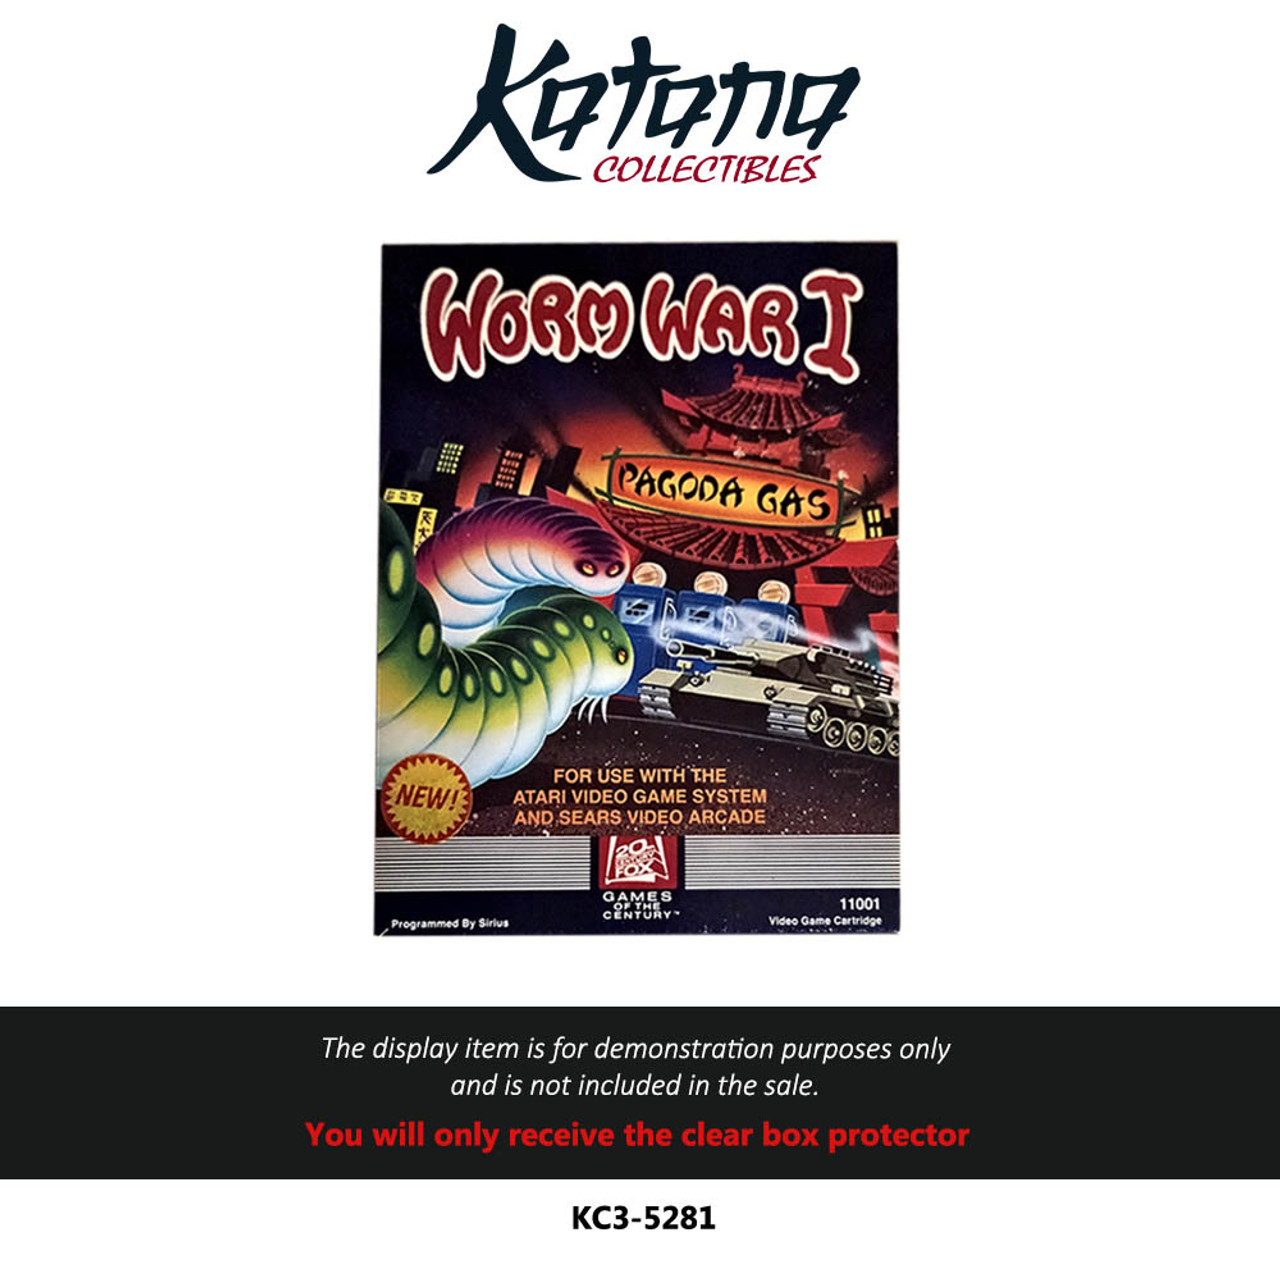 Katana Collectibles Protector For Atari 2600 Games 20th Century Fox